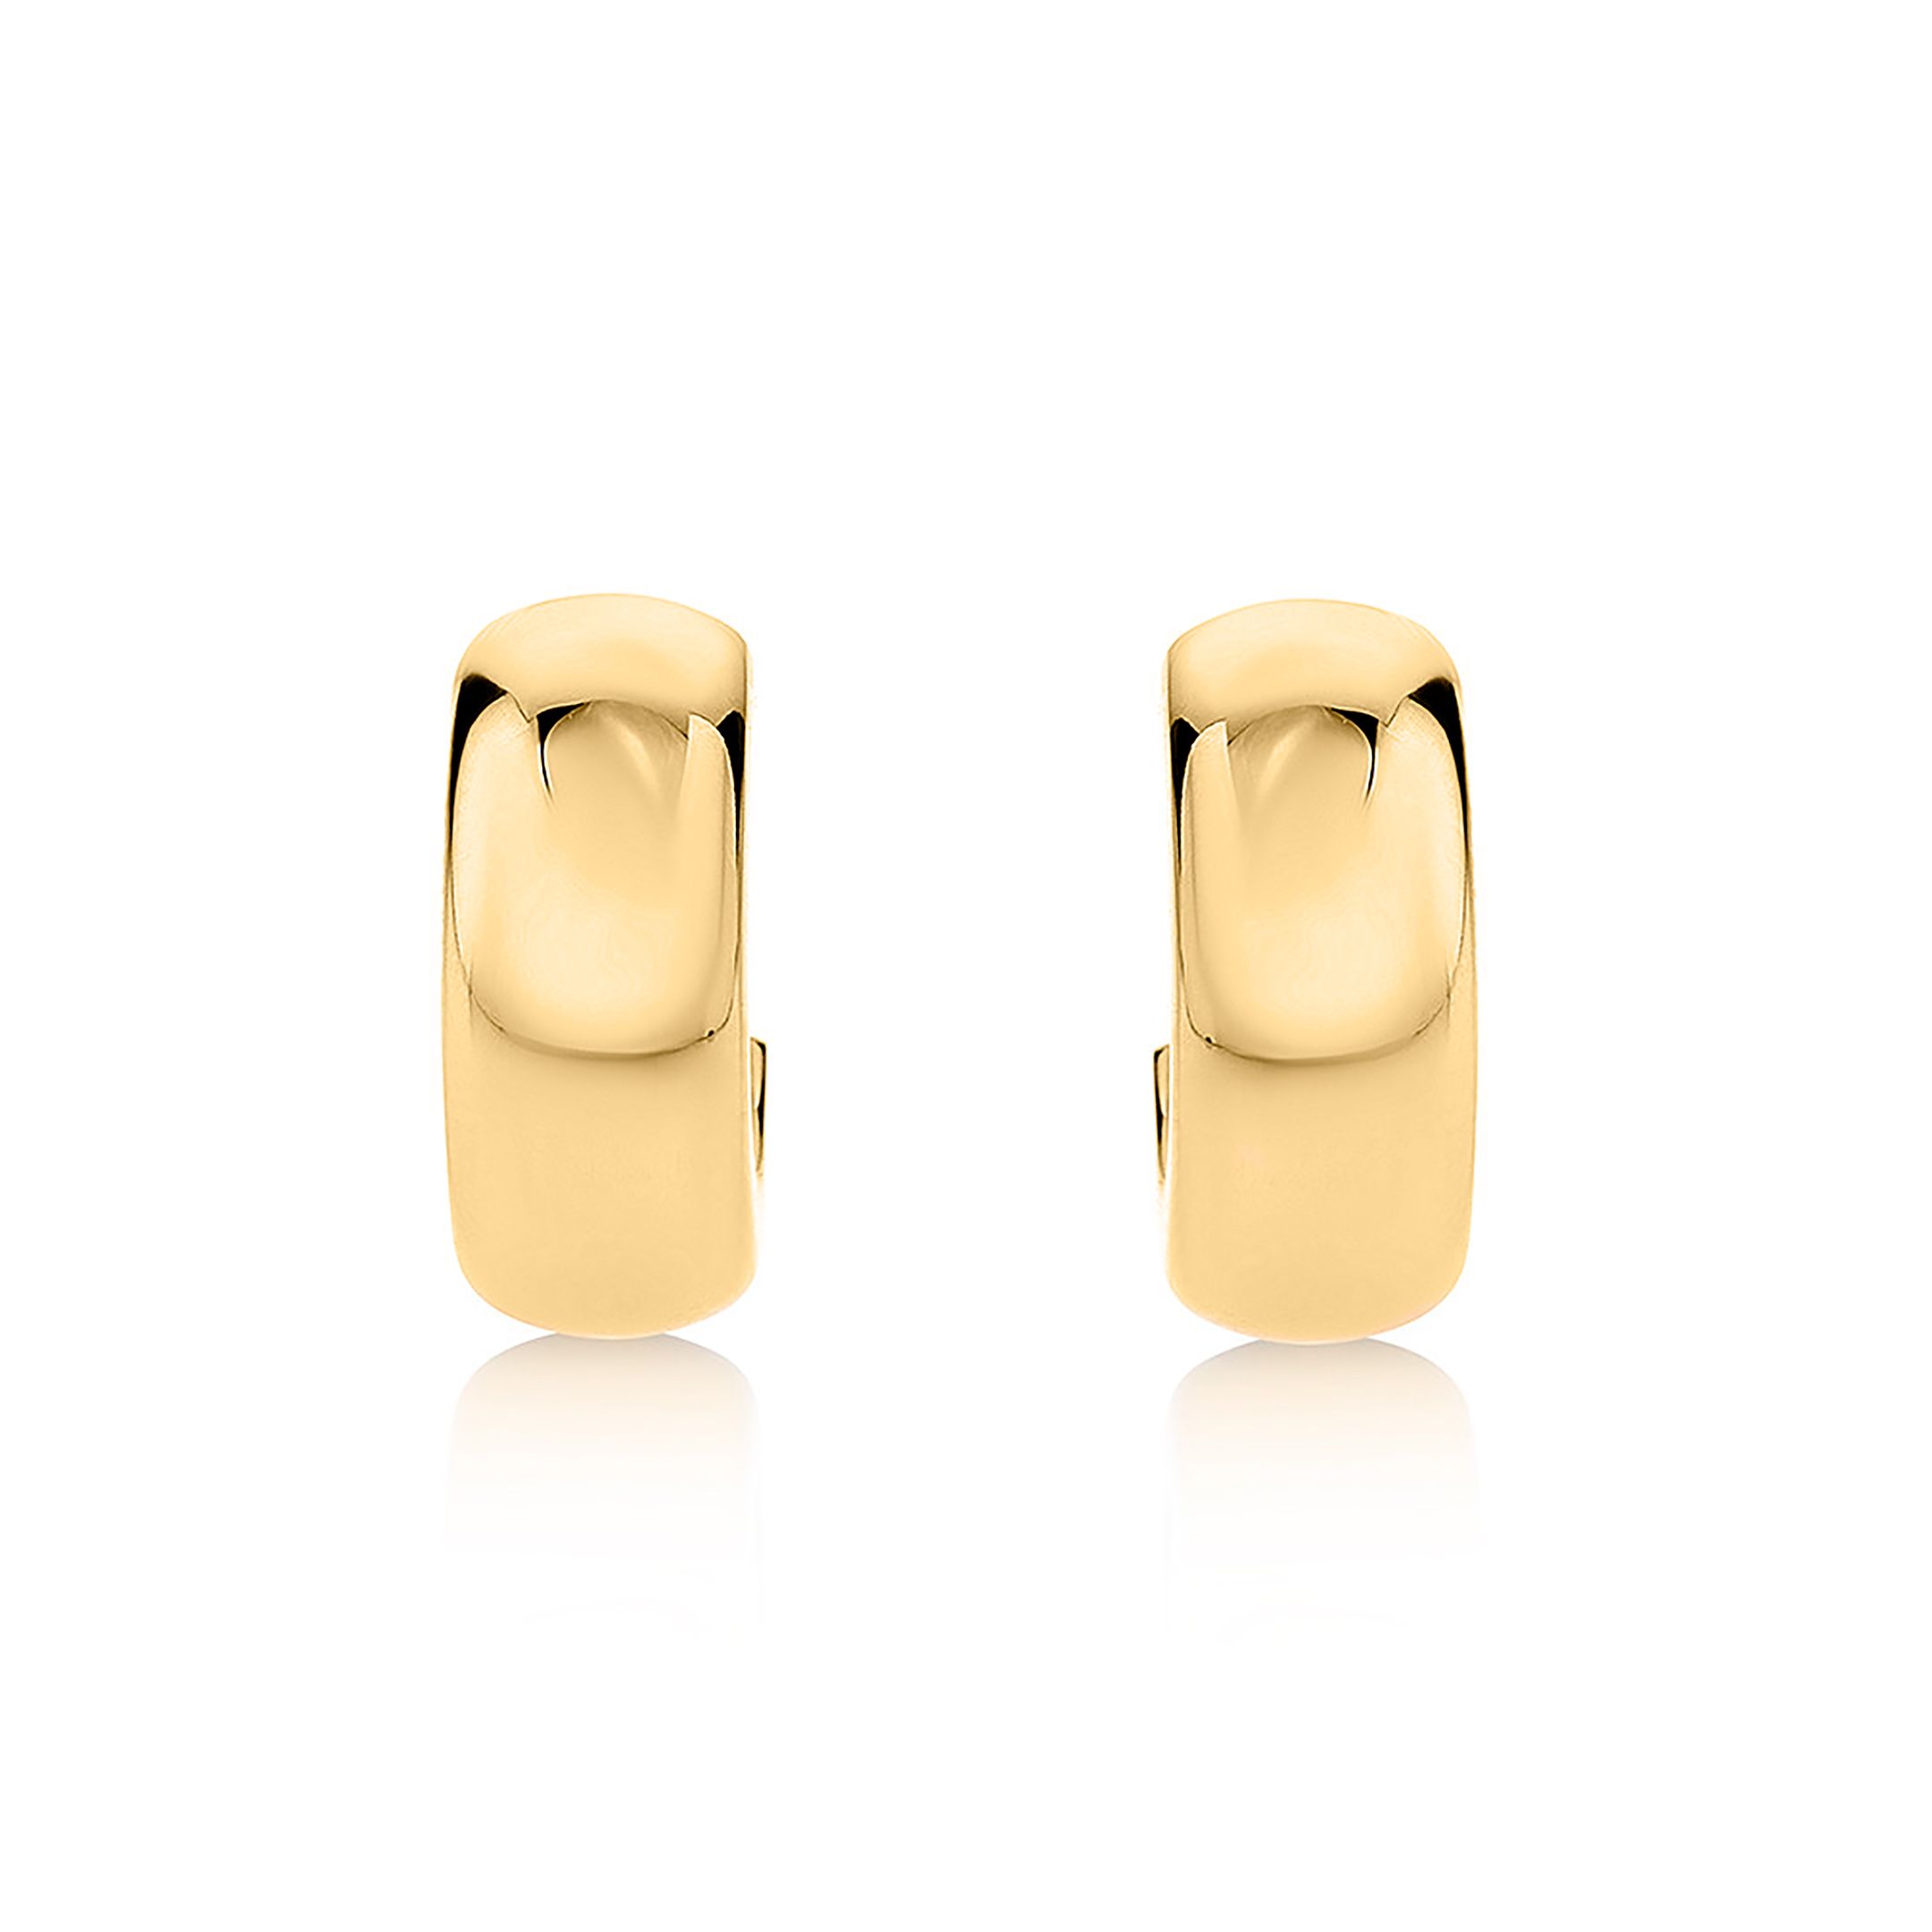 Pendientes Aro Ancho Golden Ring en Oro Amarillo de 18 Kt